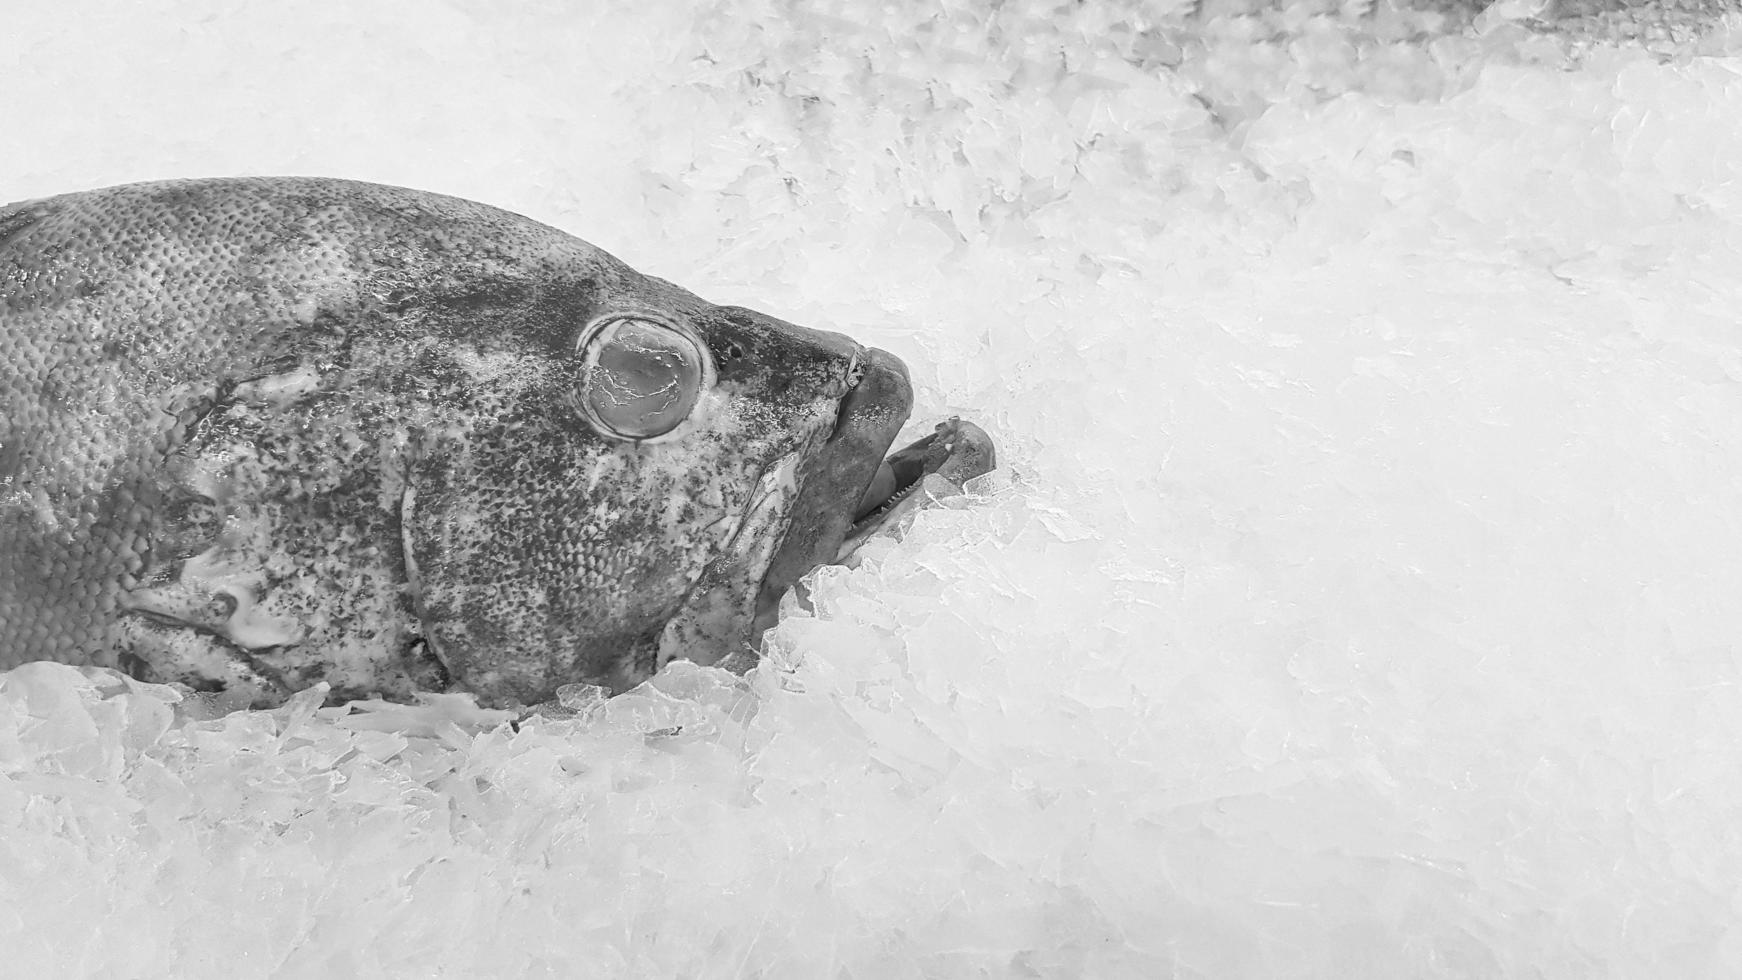 Frischer Zackenbarsch friert auf Eis zum Verkauf auf dem Fischmarkt oder im Supermarkt mit Kopienraum in Schwarz-Weiß oder monochromem Ton. ungekochtes Essen und Tier auf U-Boot. Kunst Foto